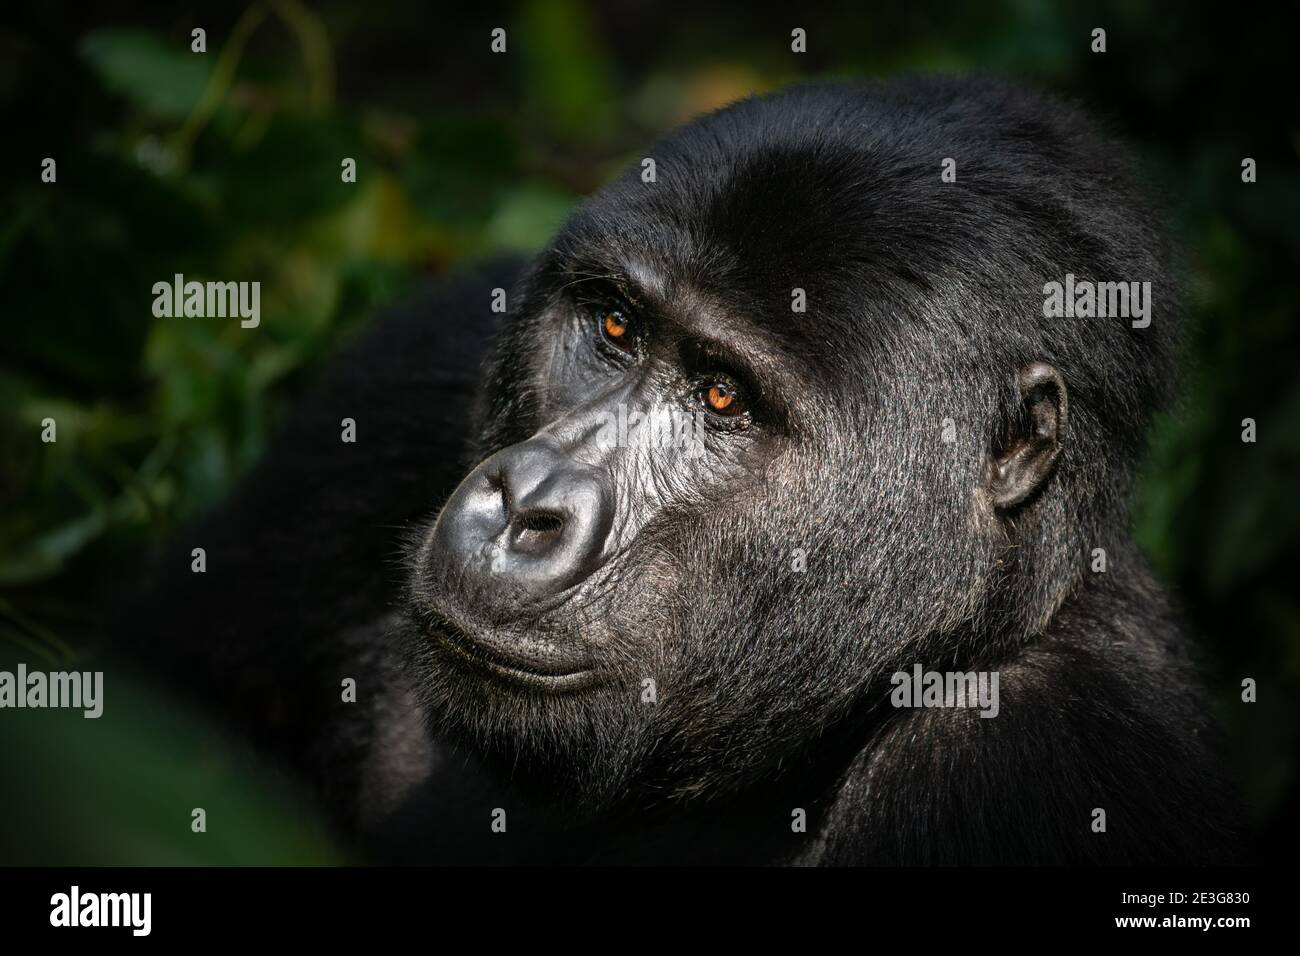 Wild critically endangered Mountain Gorillas in Uganda. Stock Photo